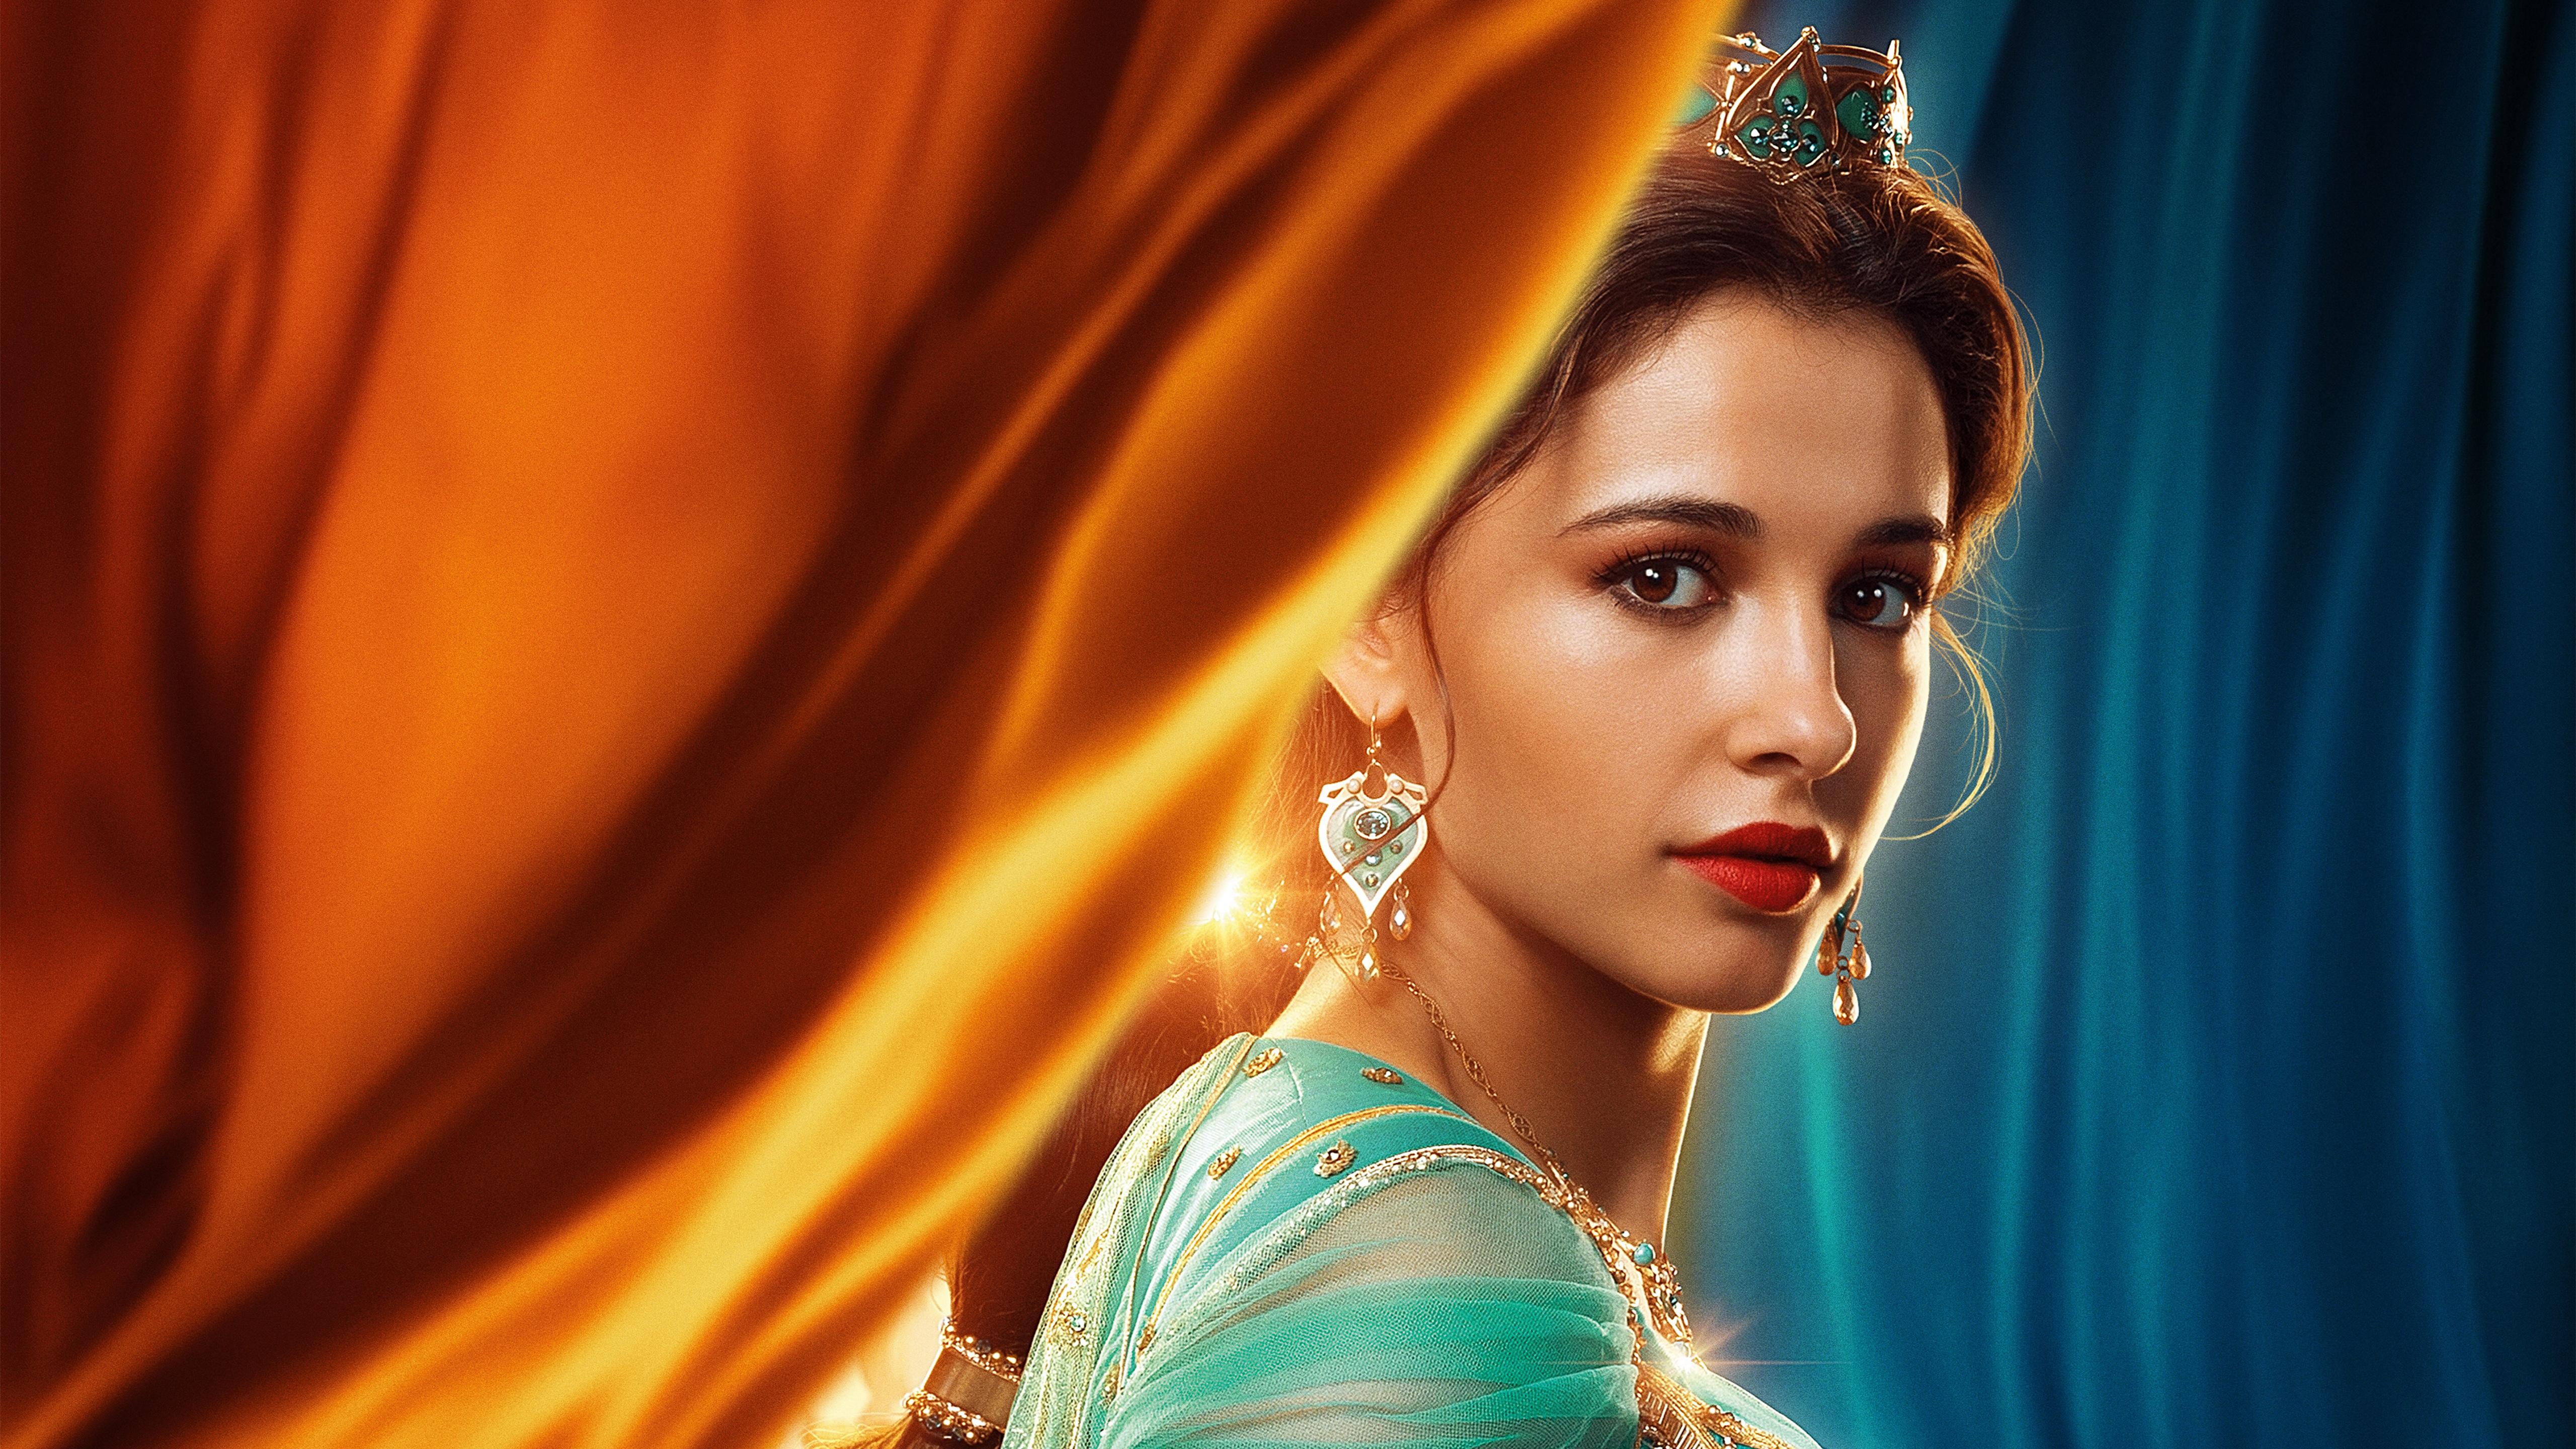 Naomi Scott as Princess Jasmine in Aladdin 2019 5K Wallpaper. HD